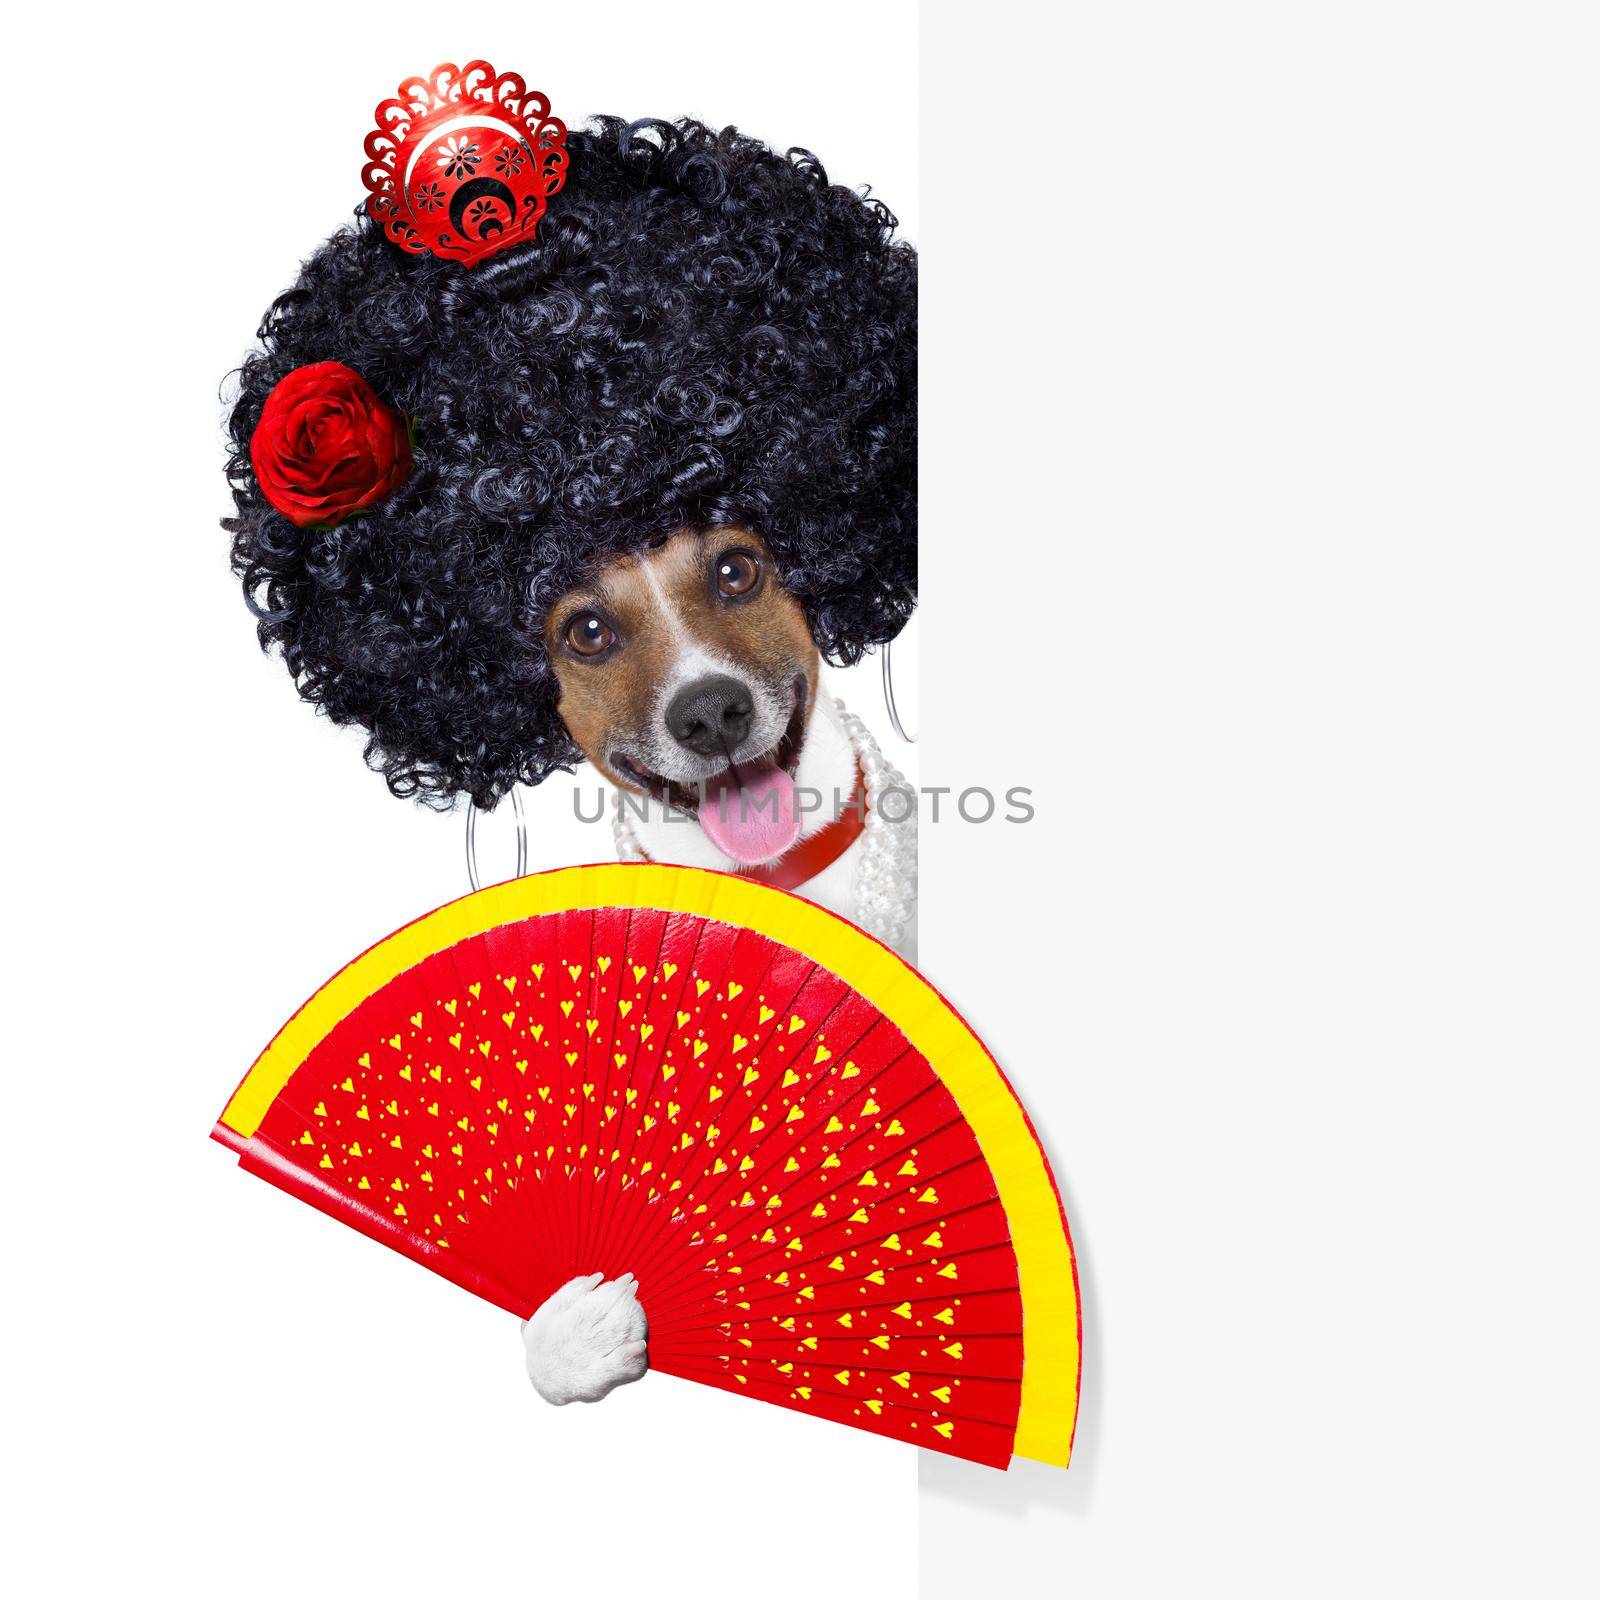 spanish dog by Brosch